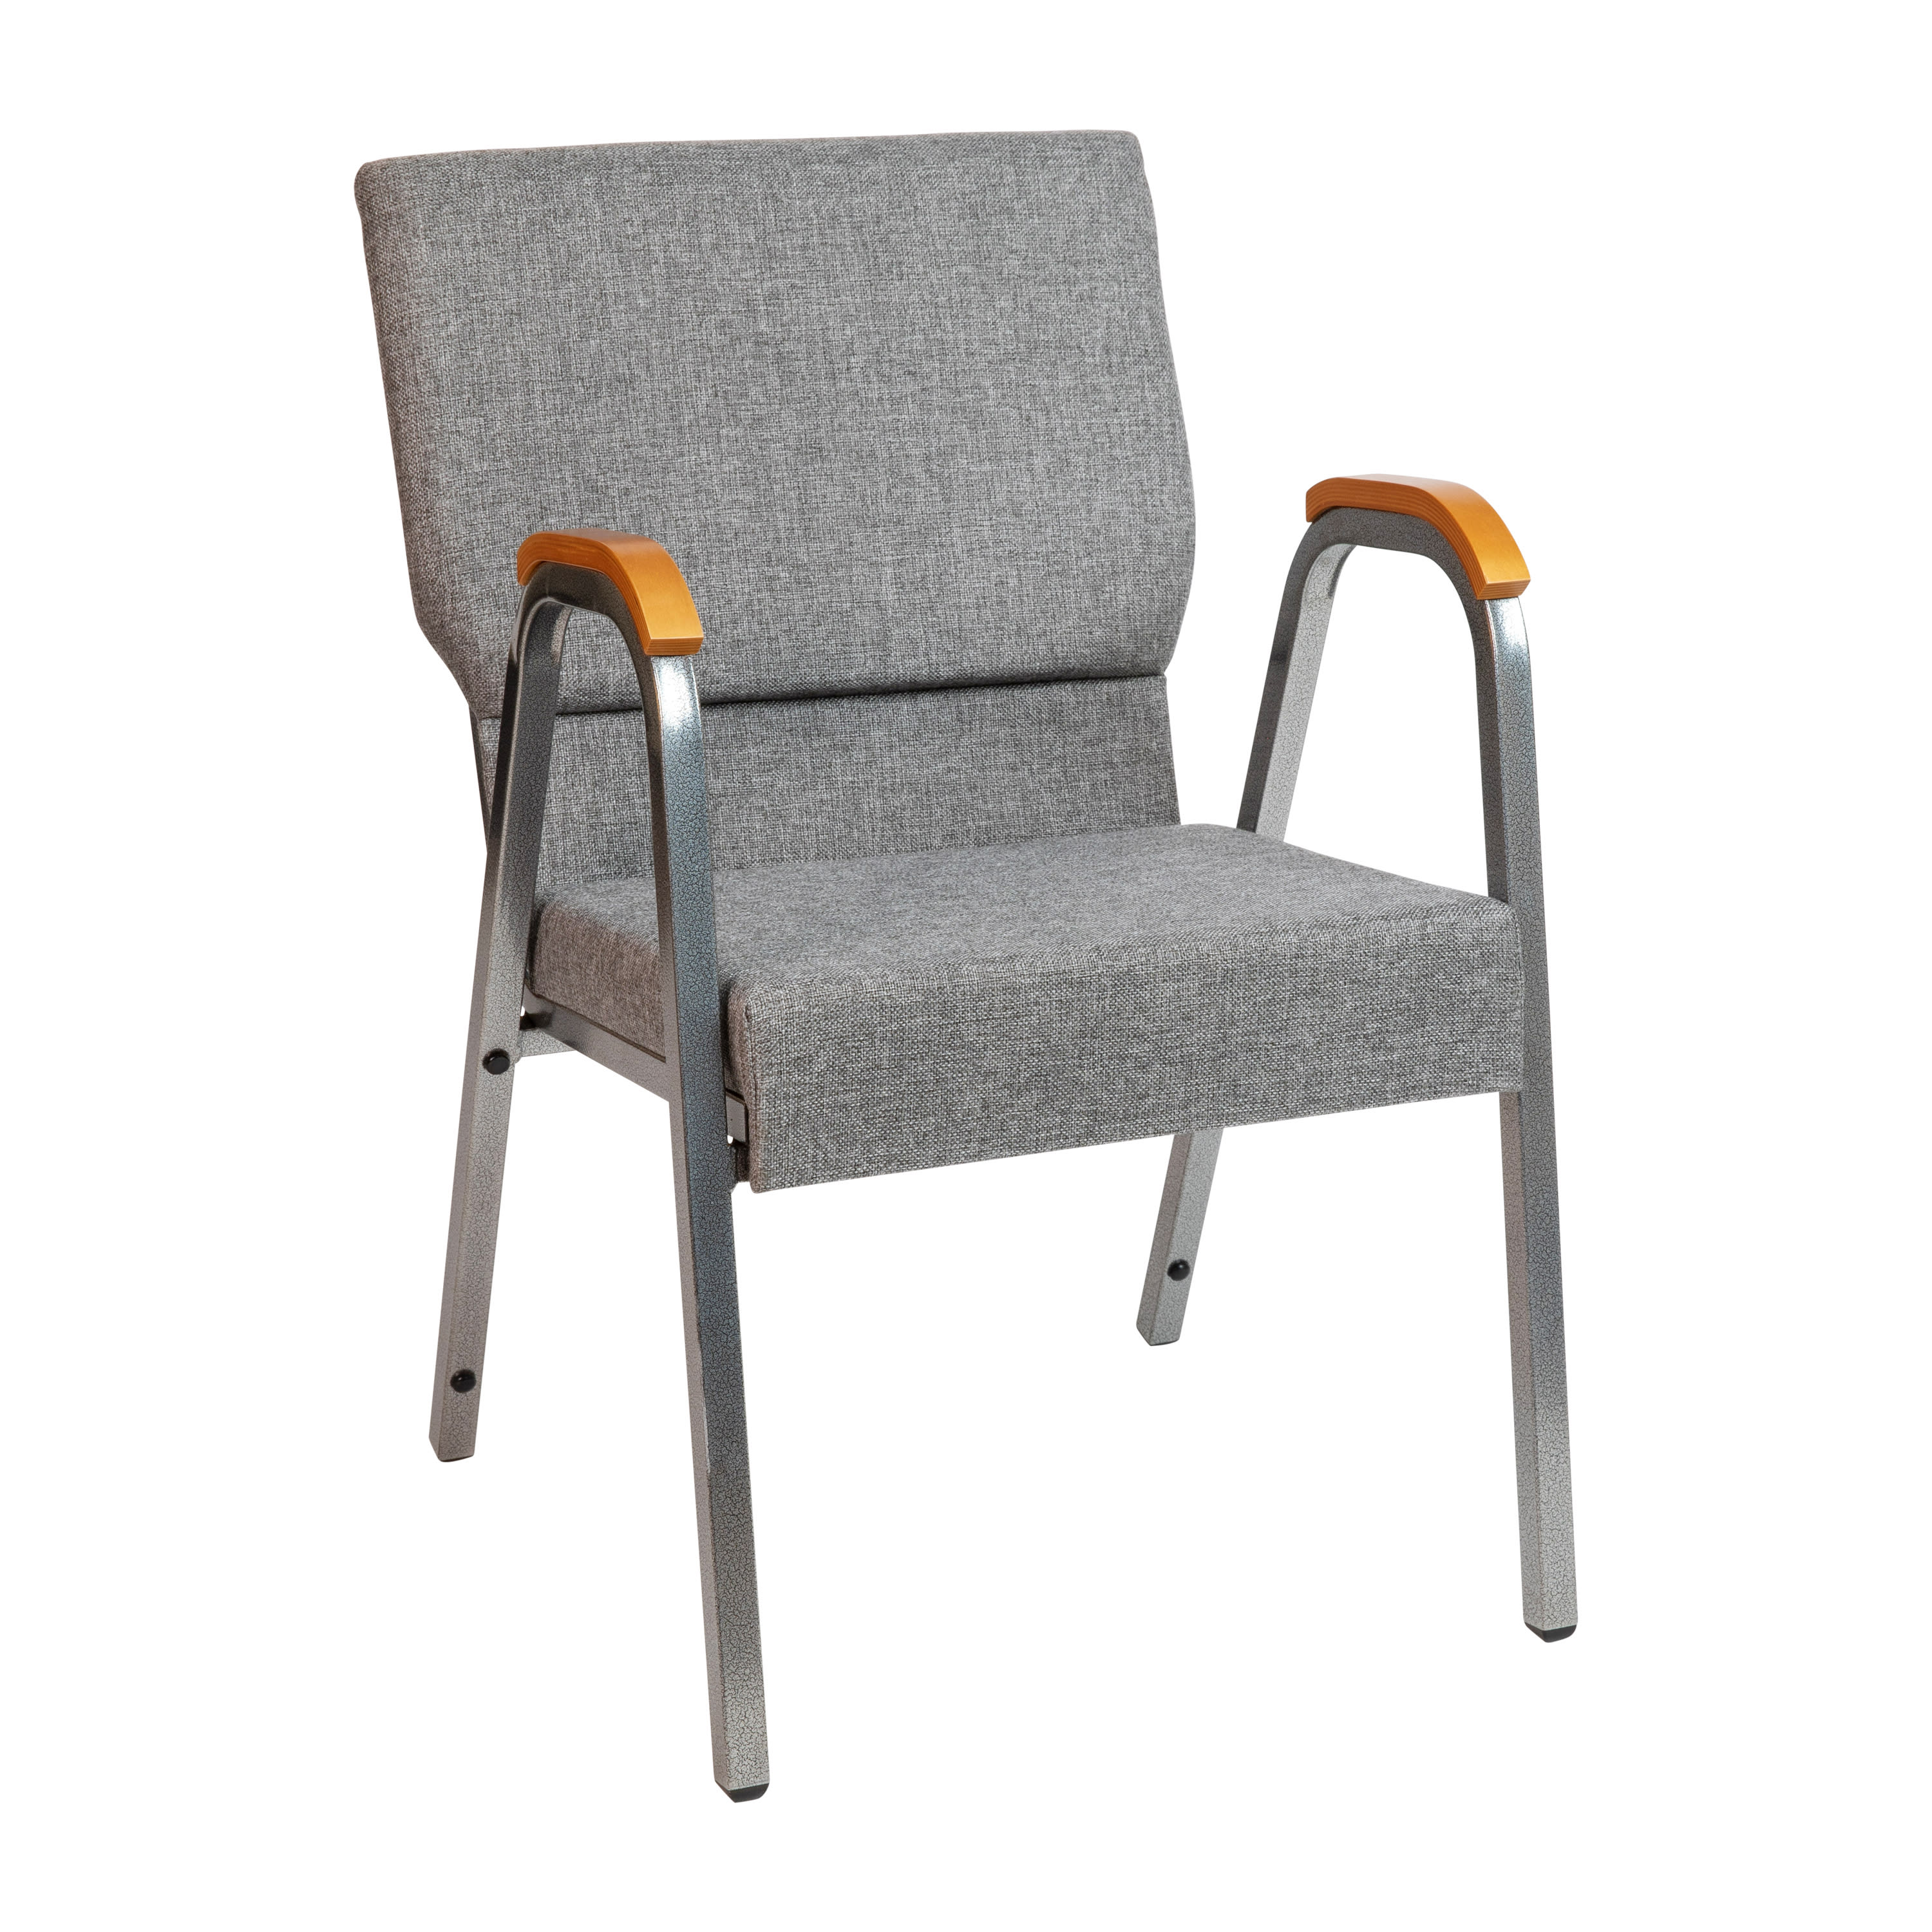 Fabric Church Arm Chair XU-DG-60156- – Stack Chairs 4 Less